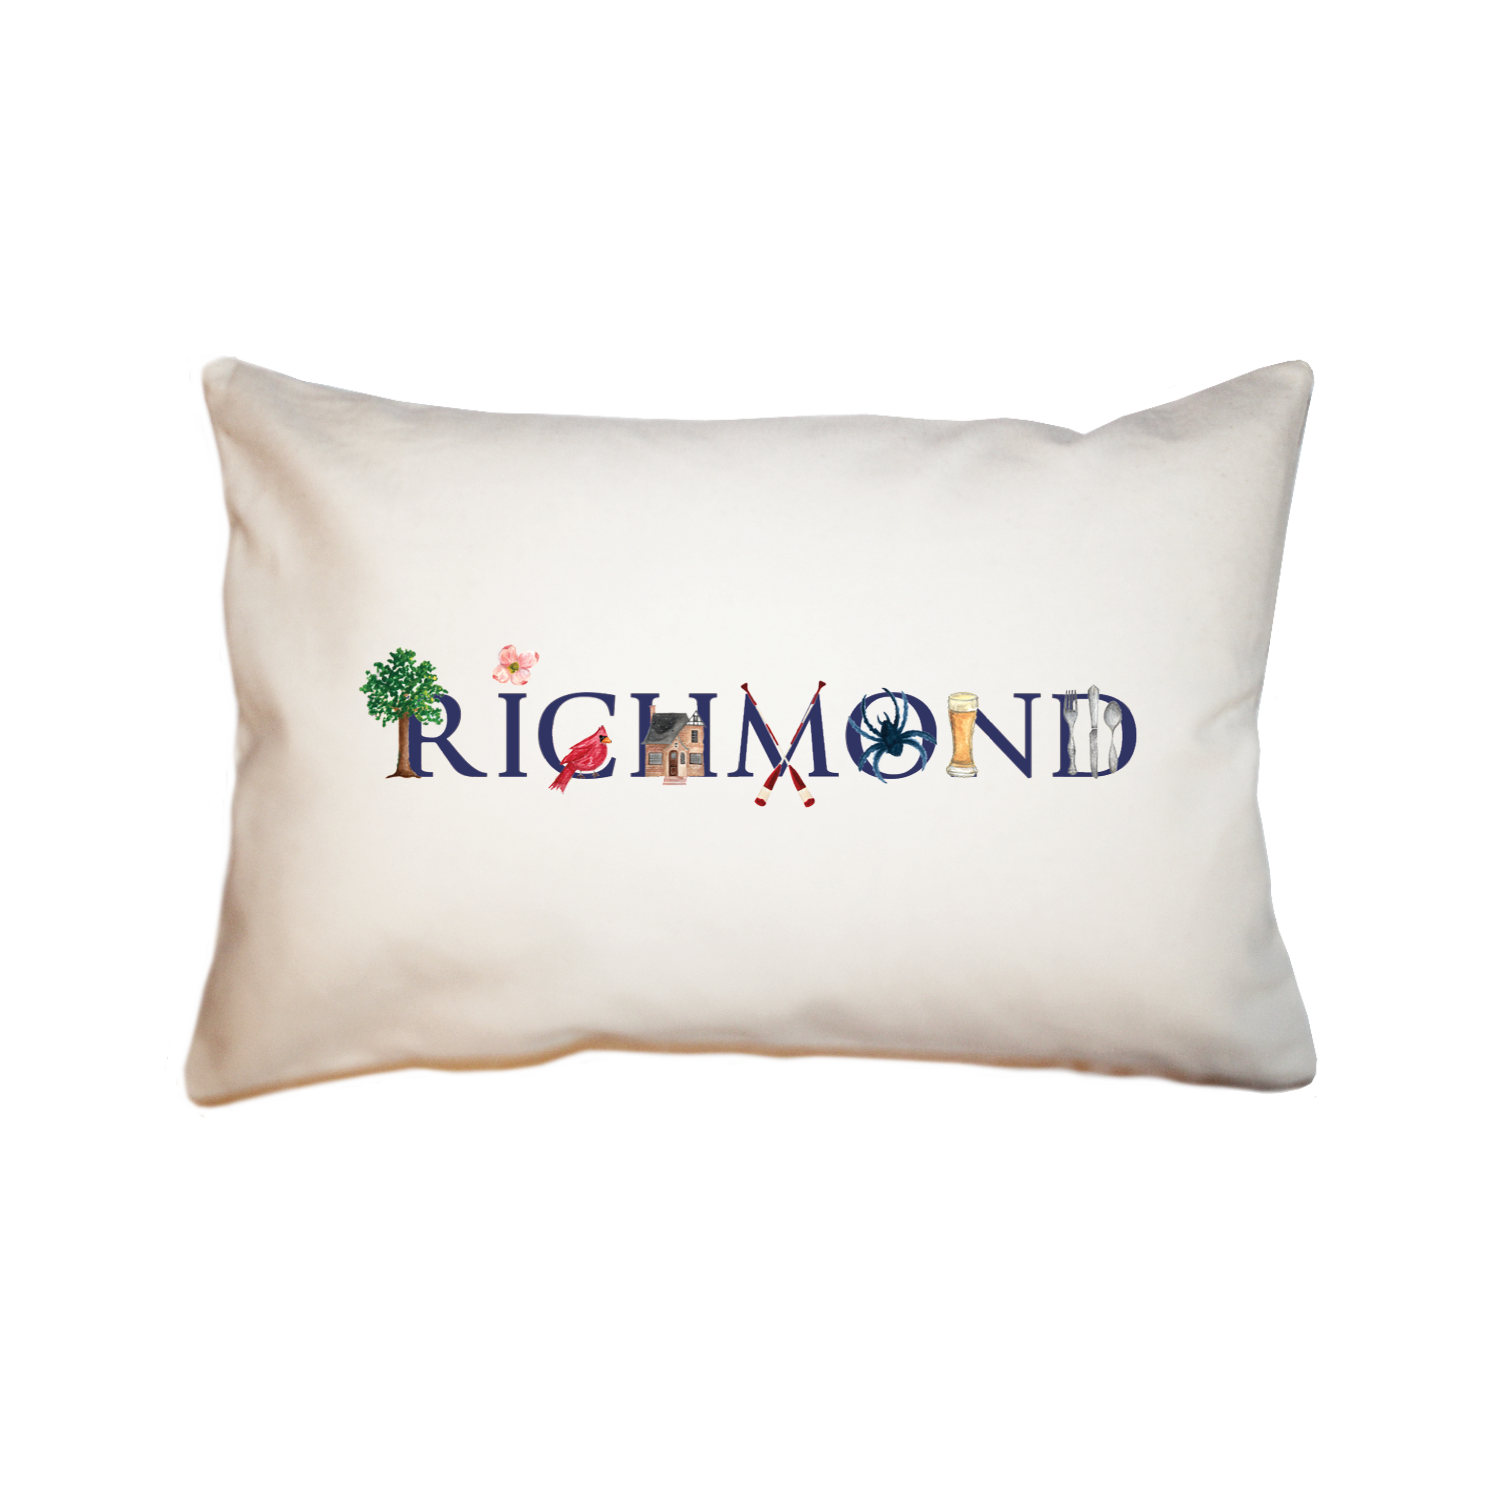 richmond, va large rectangle pillow